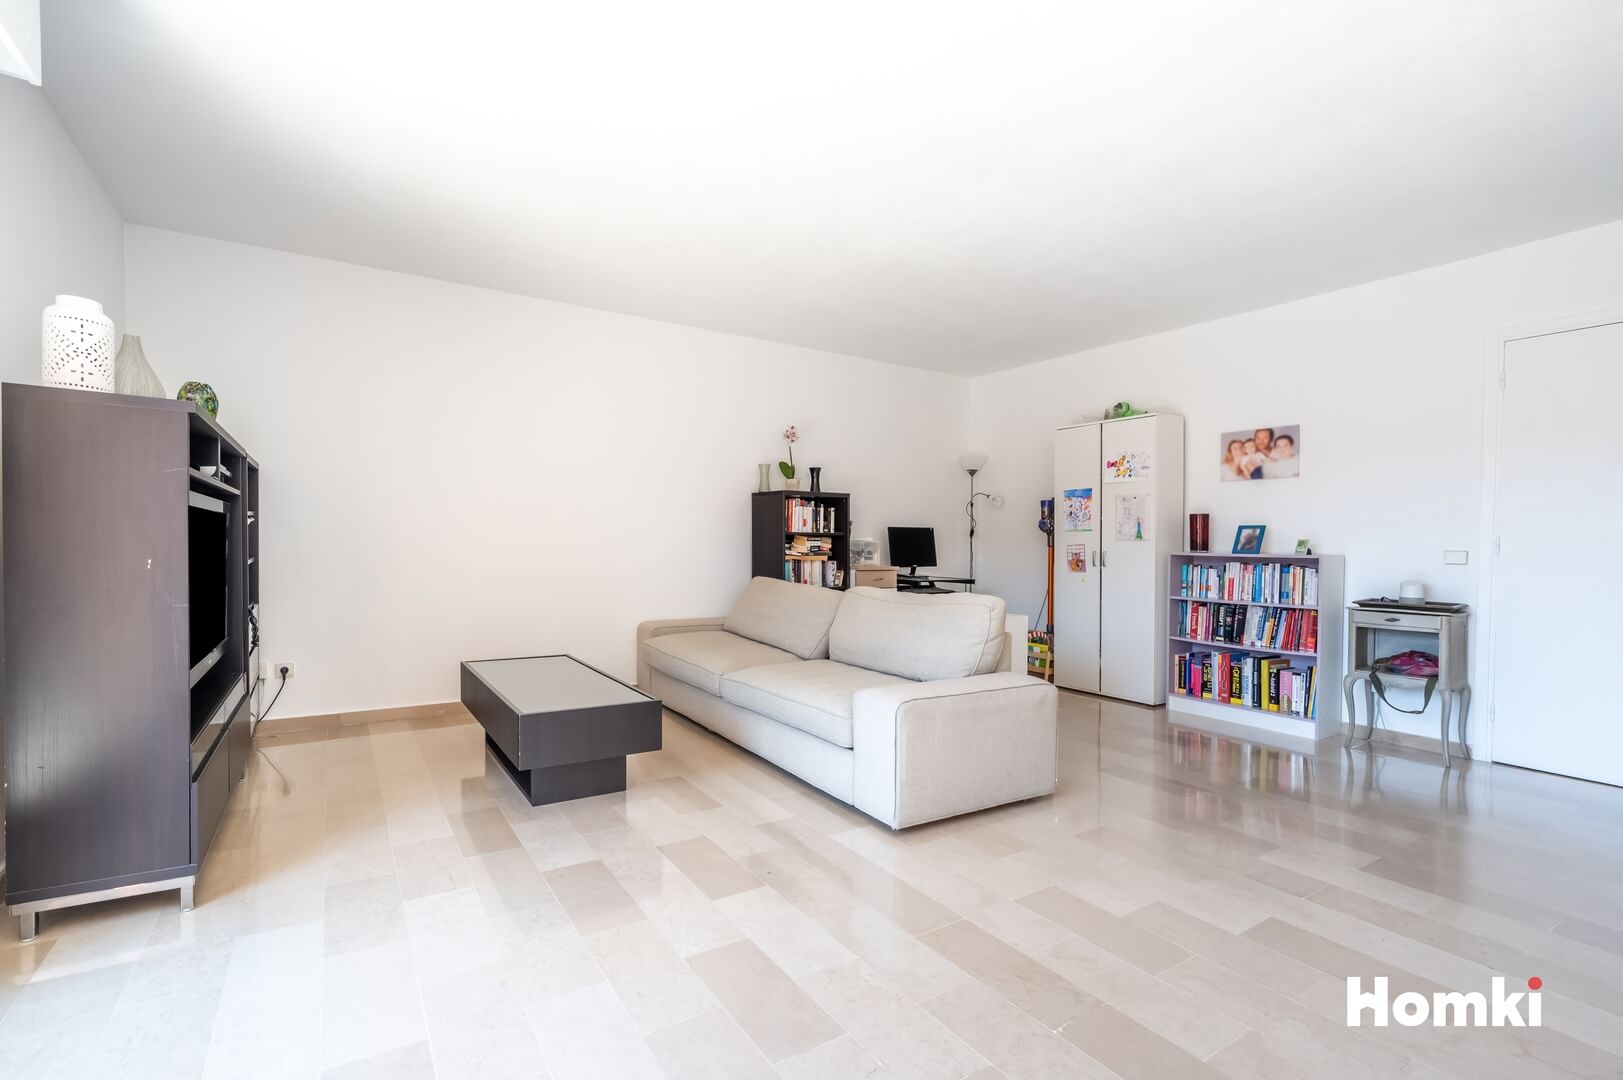 Homki - Vente Appartement  de 85.0 m² à Mougins 06250